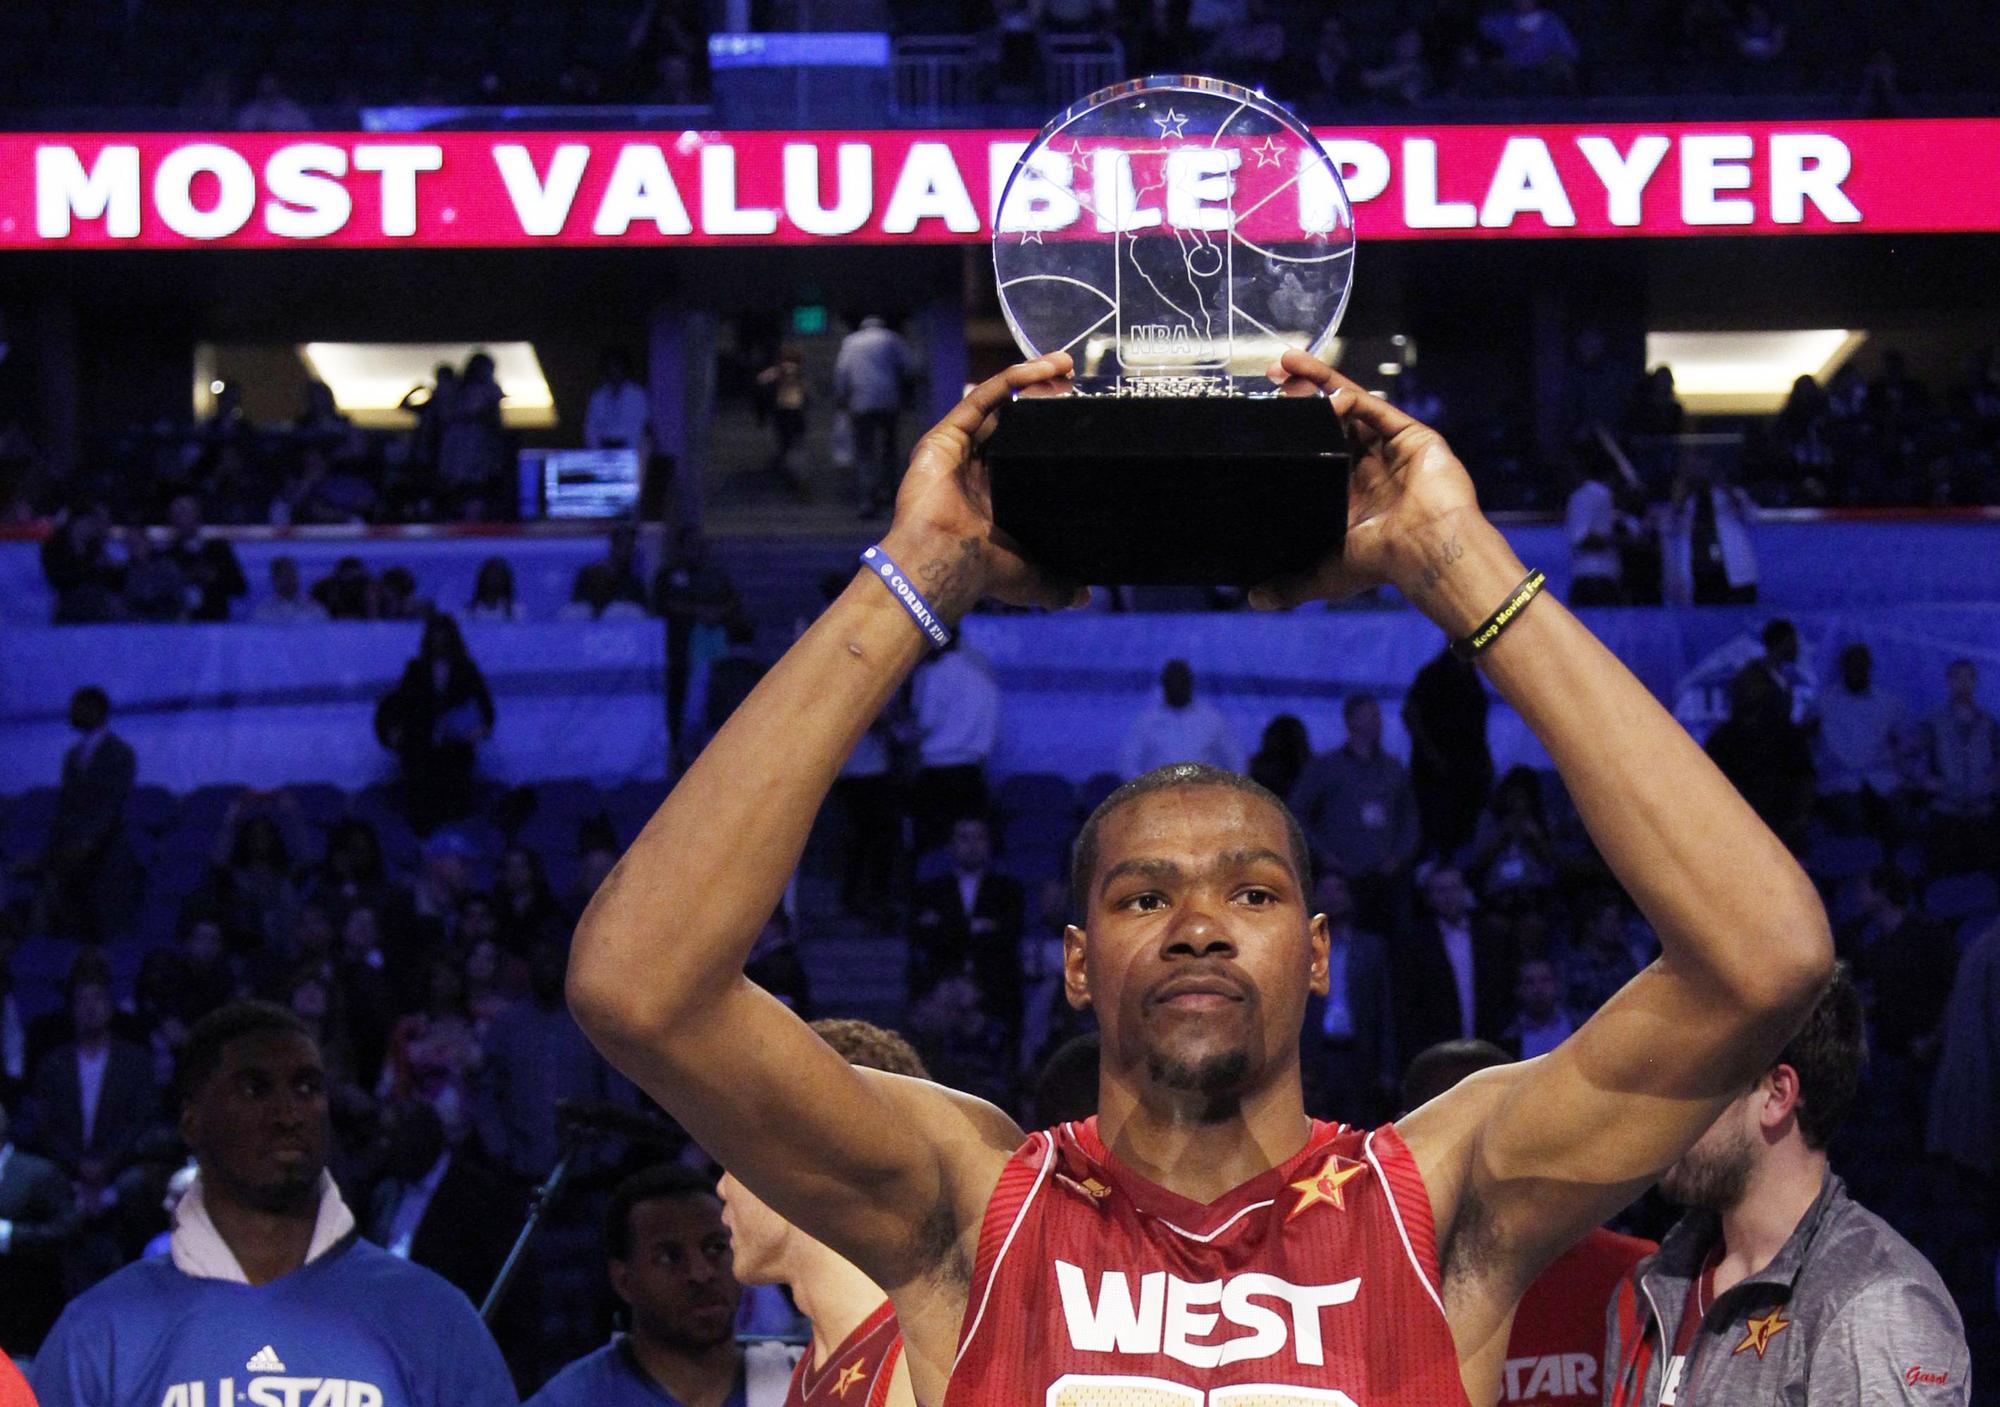 Kevin Durant a réalisé un rêve en devenant le MVP du All Star Game 2012 de NBA. [REUTERS - � Jeff Haynes / Reuters]